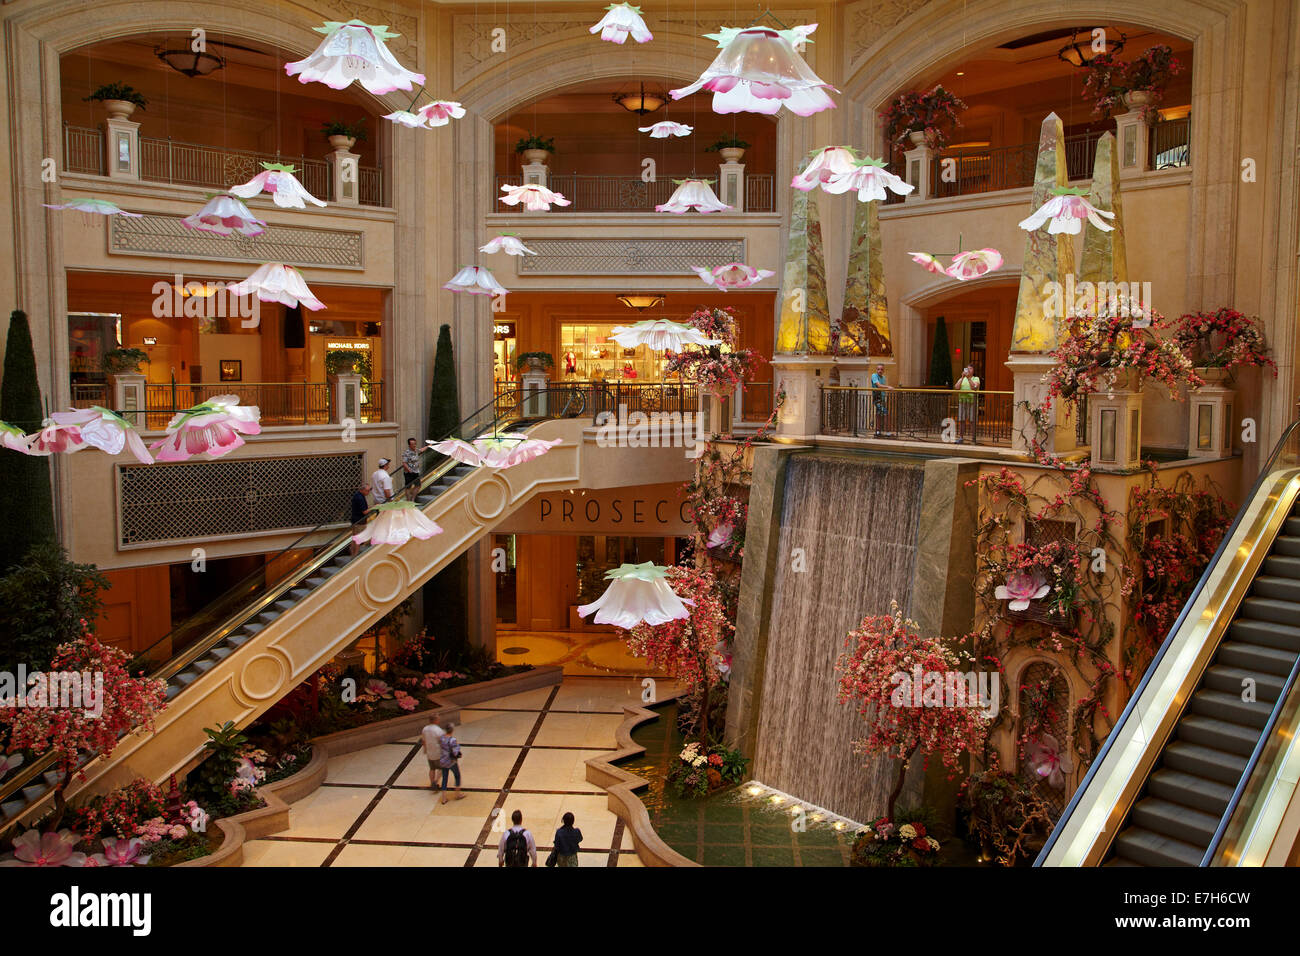 Atrium with waterfall, The Palazzo, Las Vegas, Nevada, USA Stock Photo